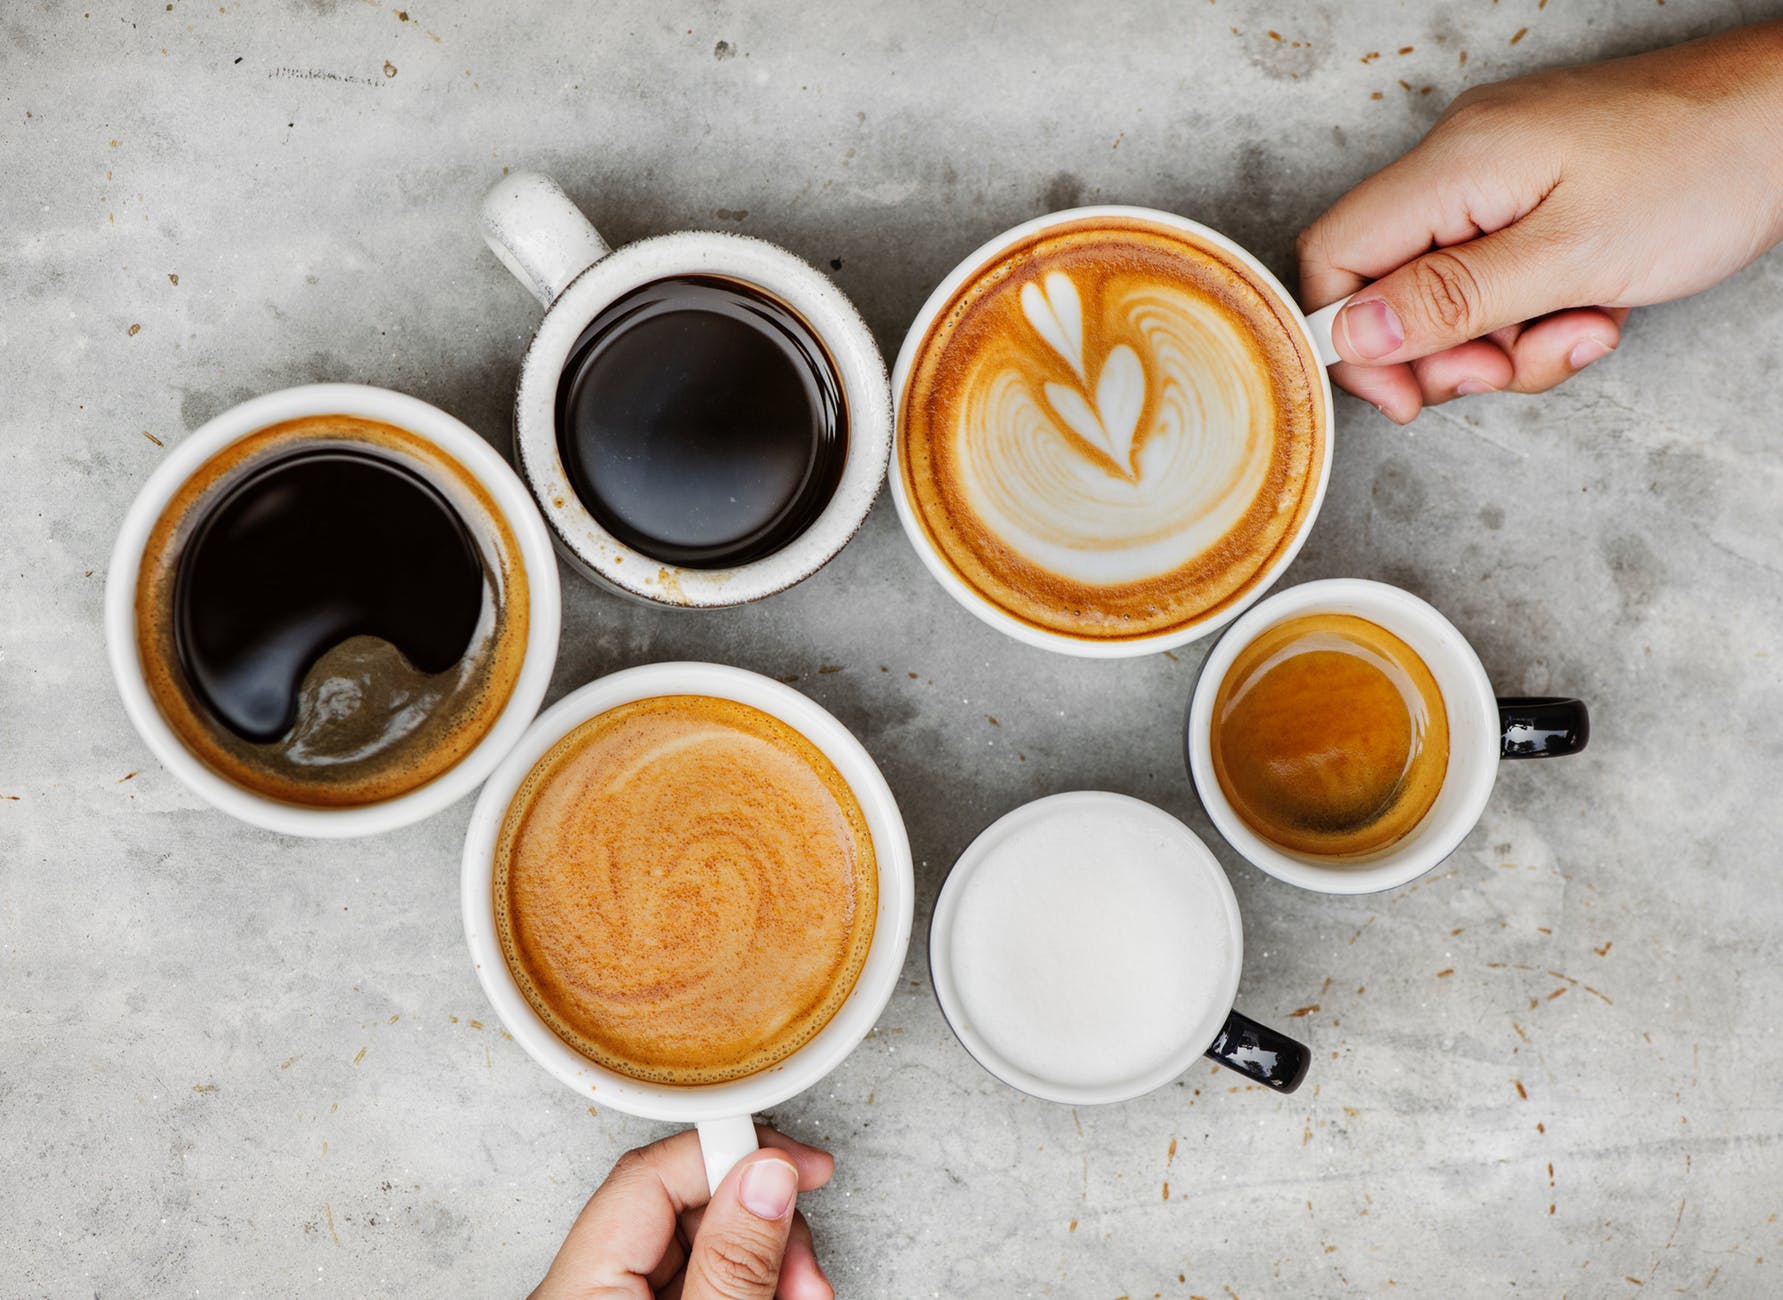 Τρεις τρόποι να εξουδετερώσεις την επίδραση της καφεΐνης